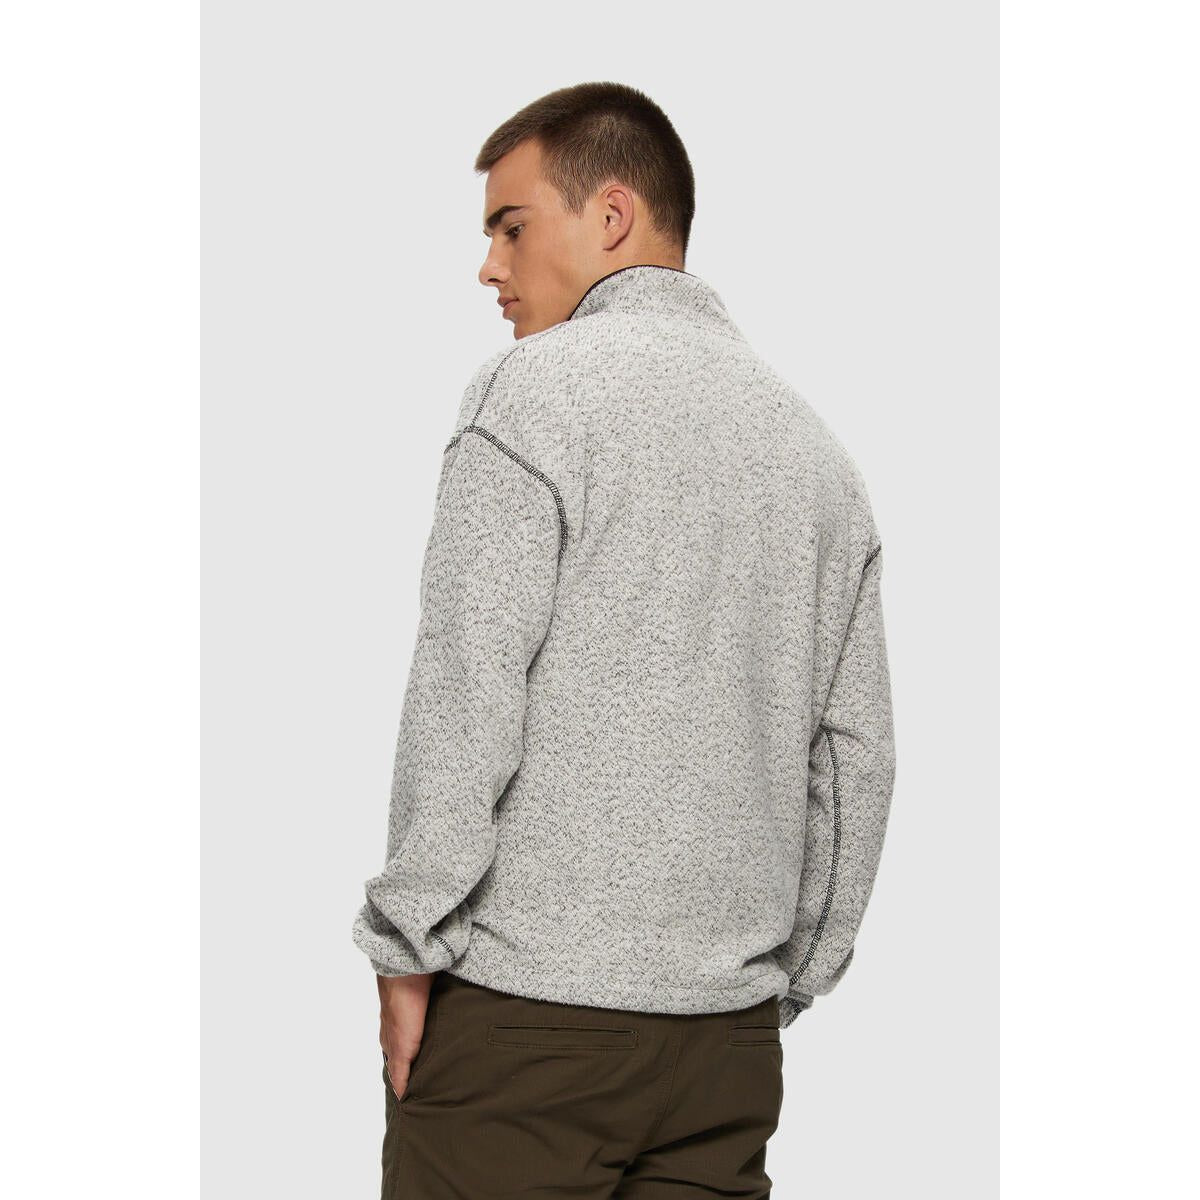 Kuwalla | Tee Grey / S Kuwalla Hacci Half Zip Pullover Sweater